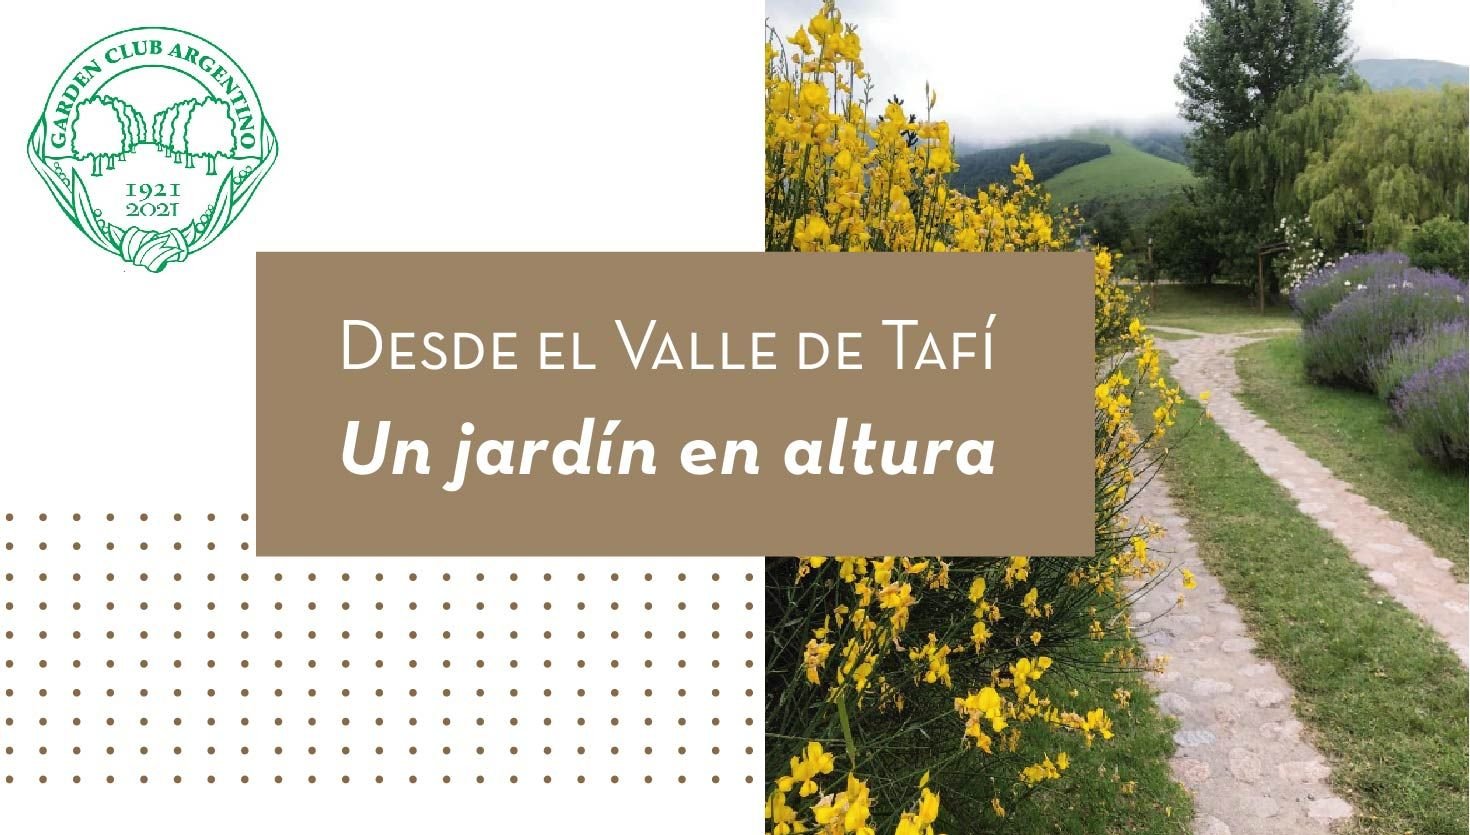 Desde el Valle de Tafí, un jardín en altura